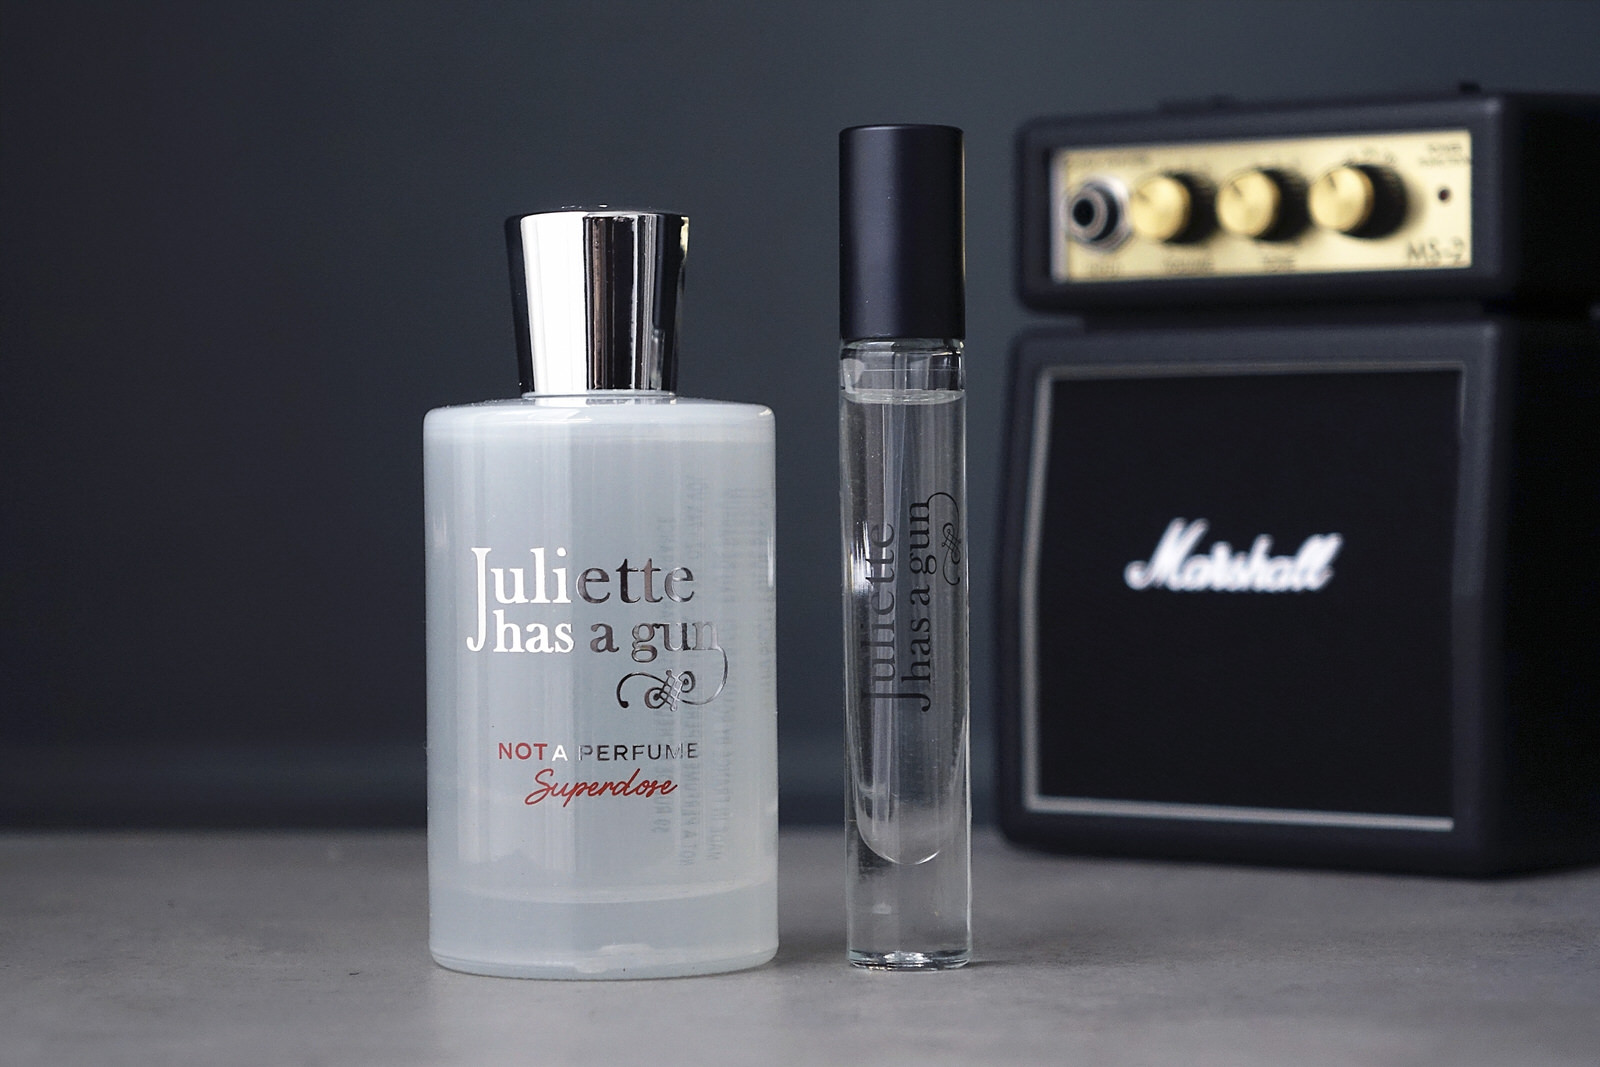 Le nouveau parfum Not a Perfume Superdose de Juliette has a gun